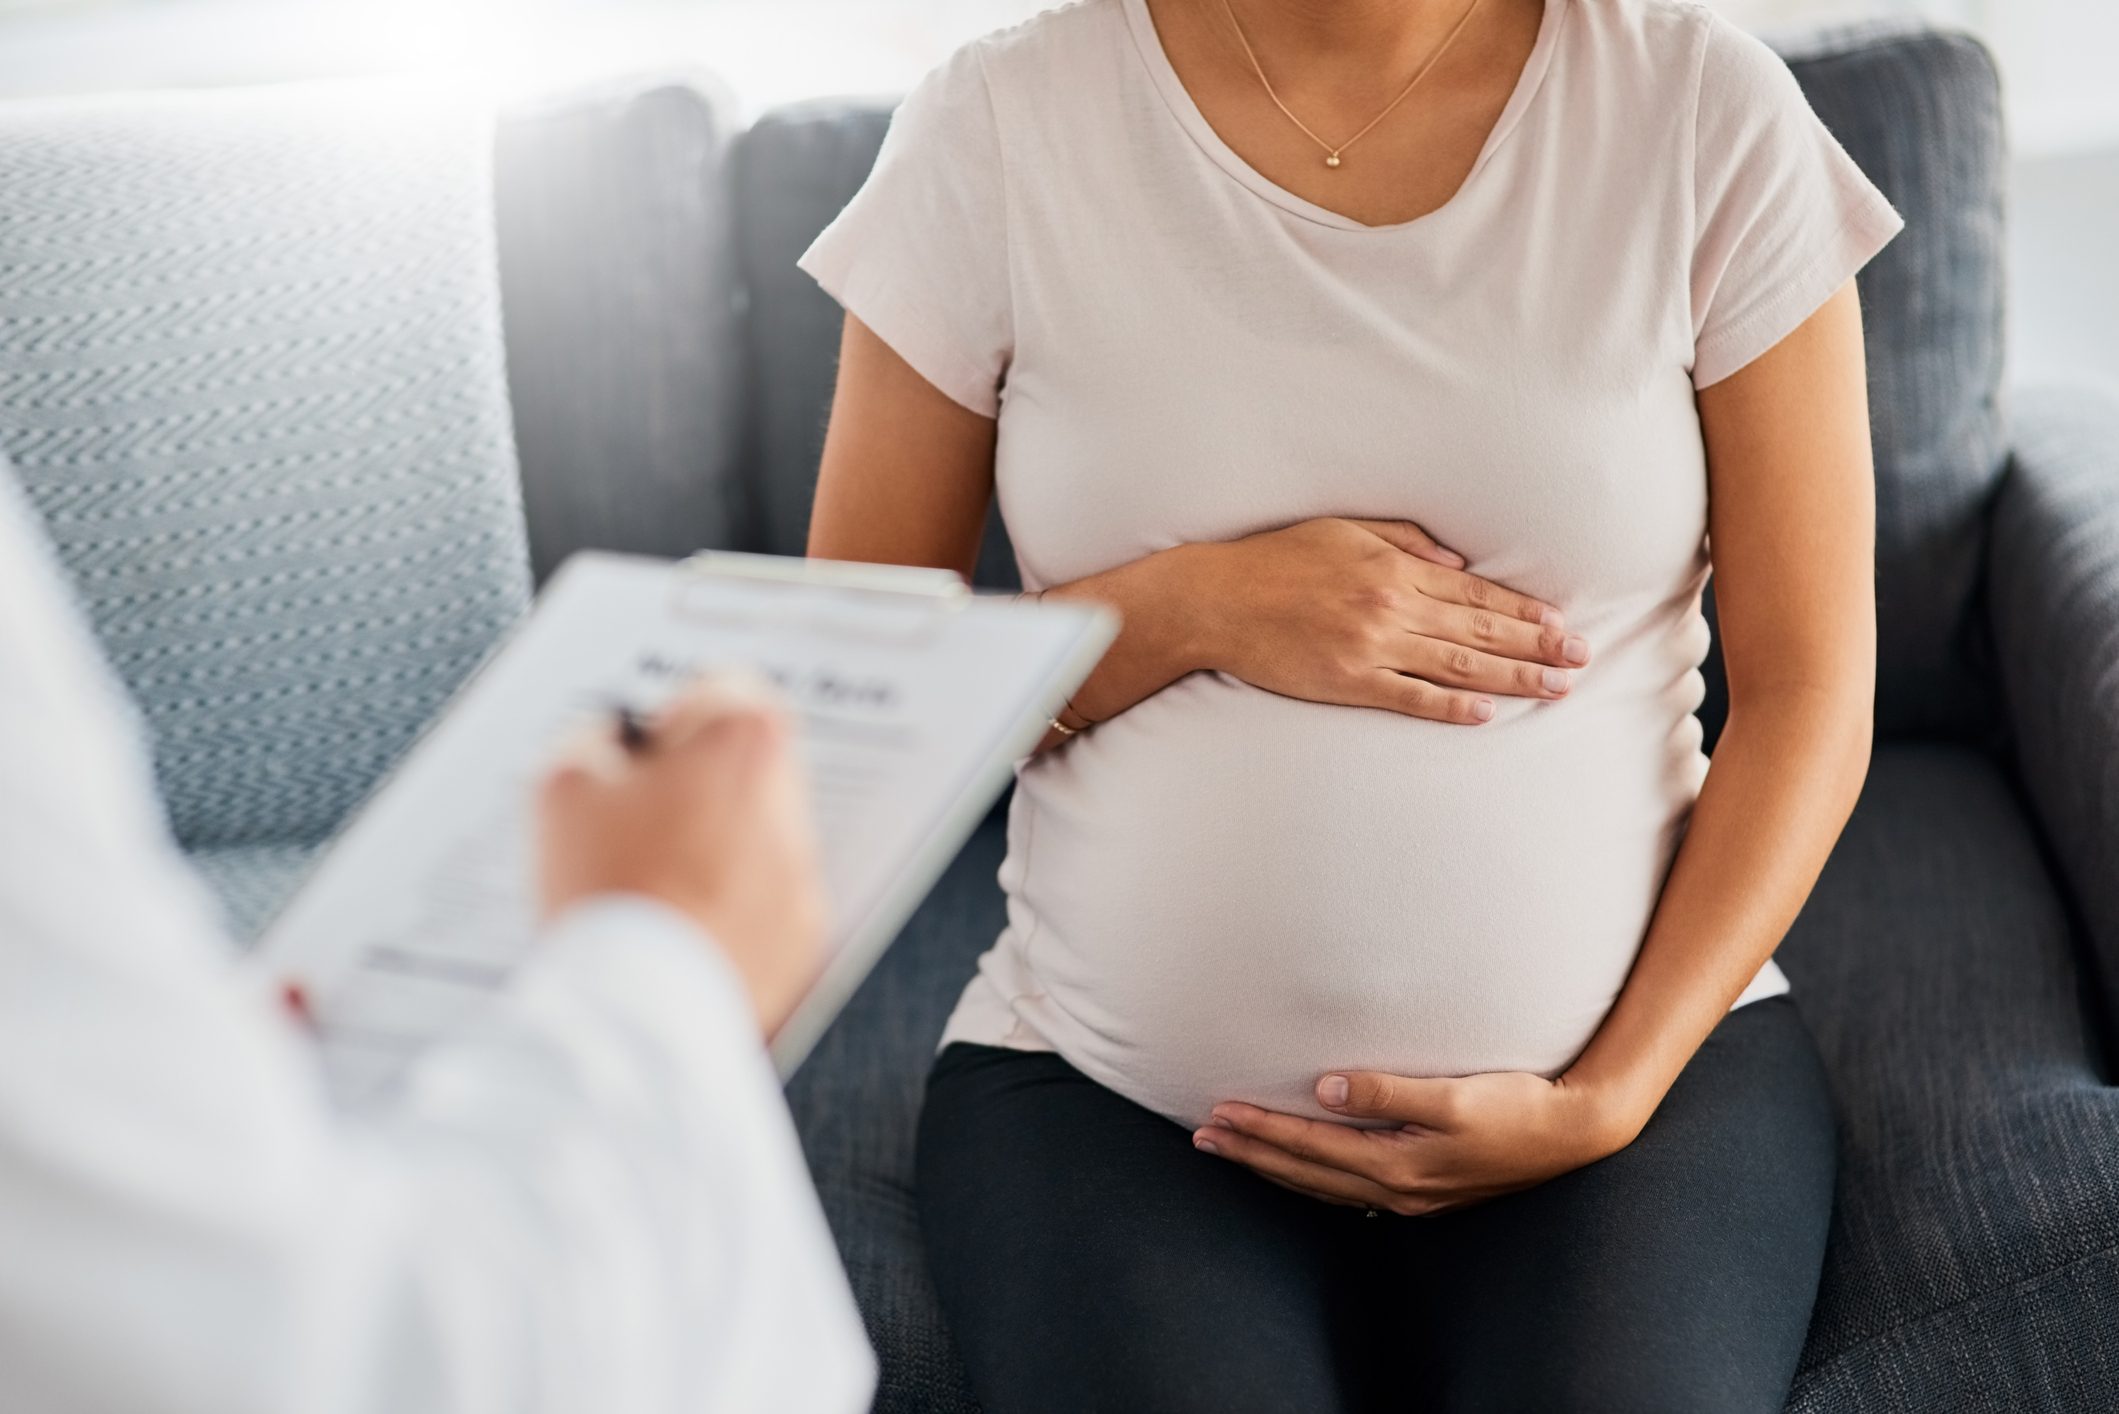 La trombosi in gravidanza è più frequente in soggetti geneticamente predisposti